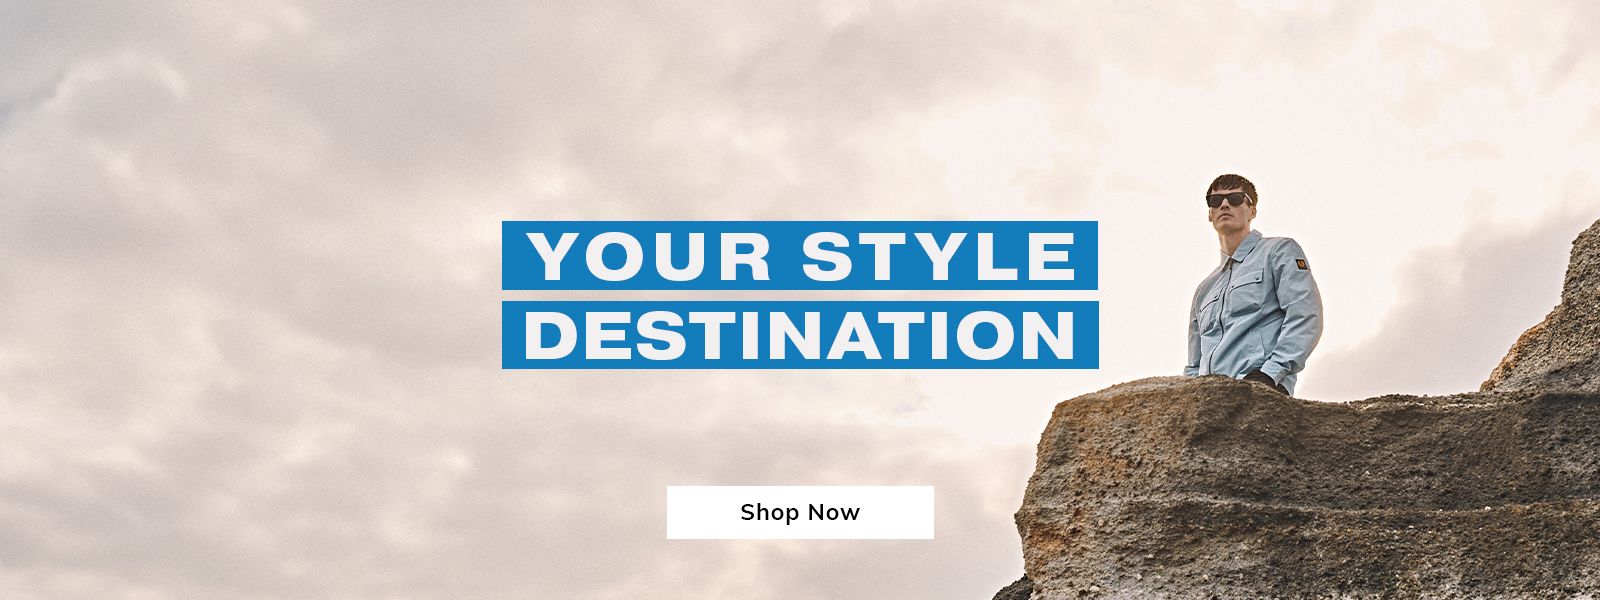 Your Style Destination - Shop Now